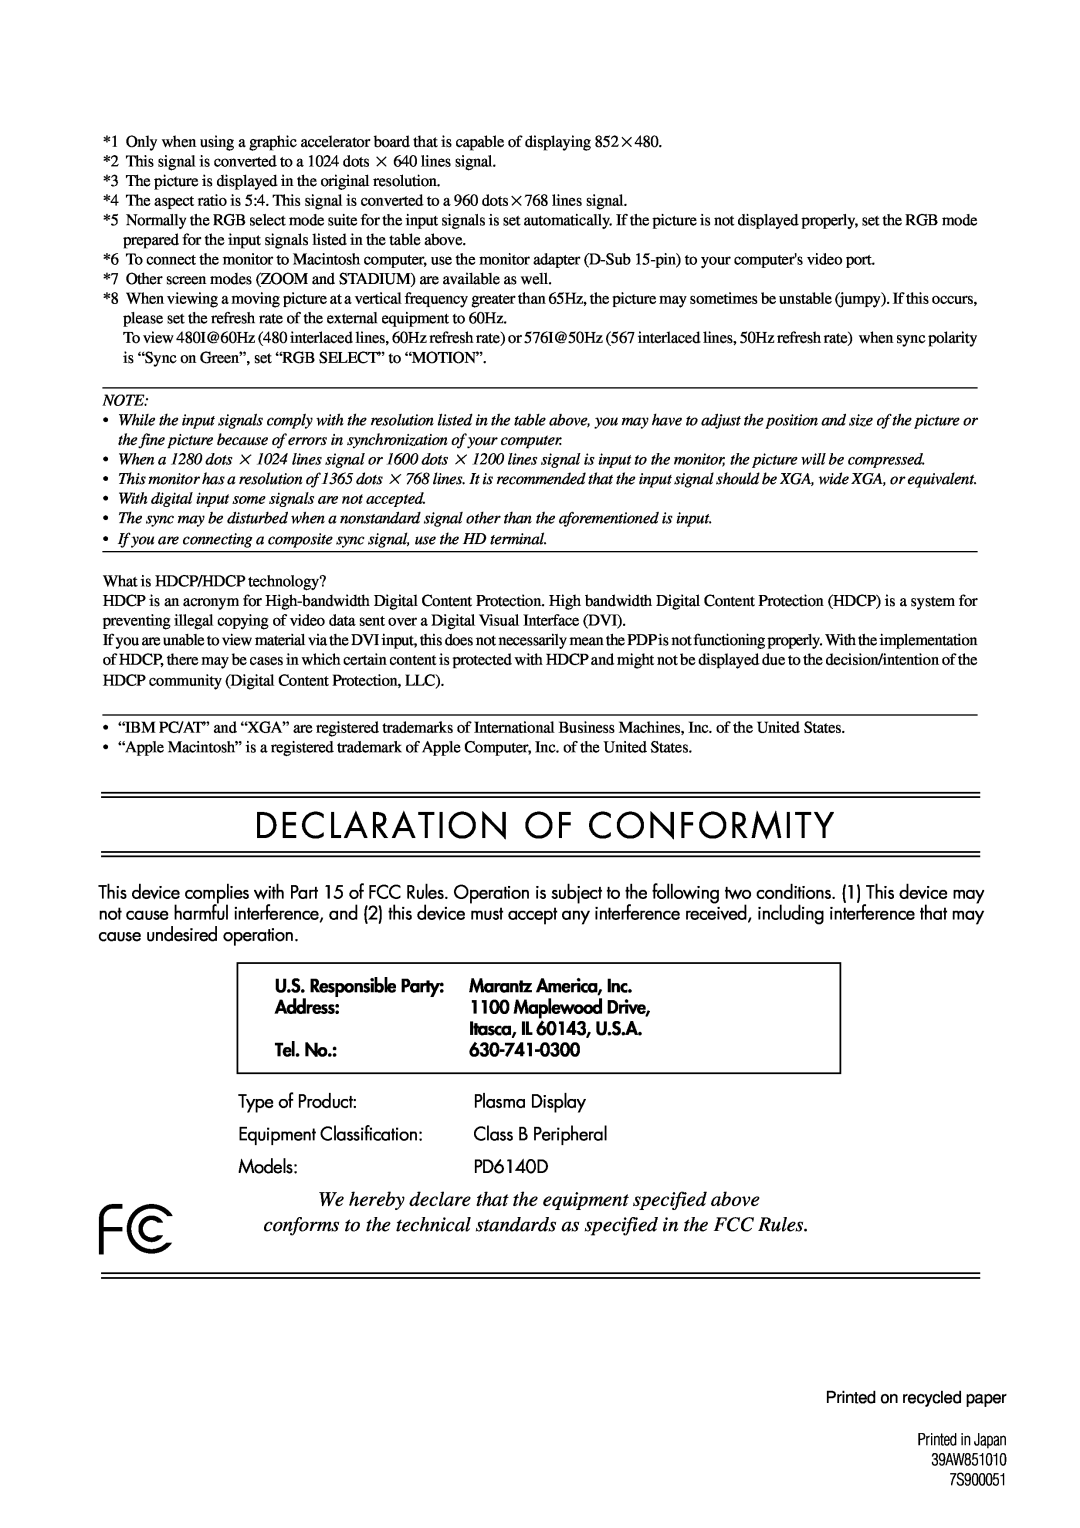 Marantz PD6140D manual Declaration Of Conformity 